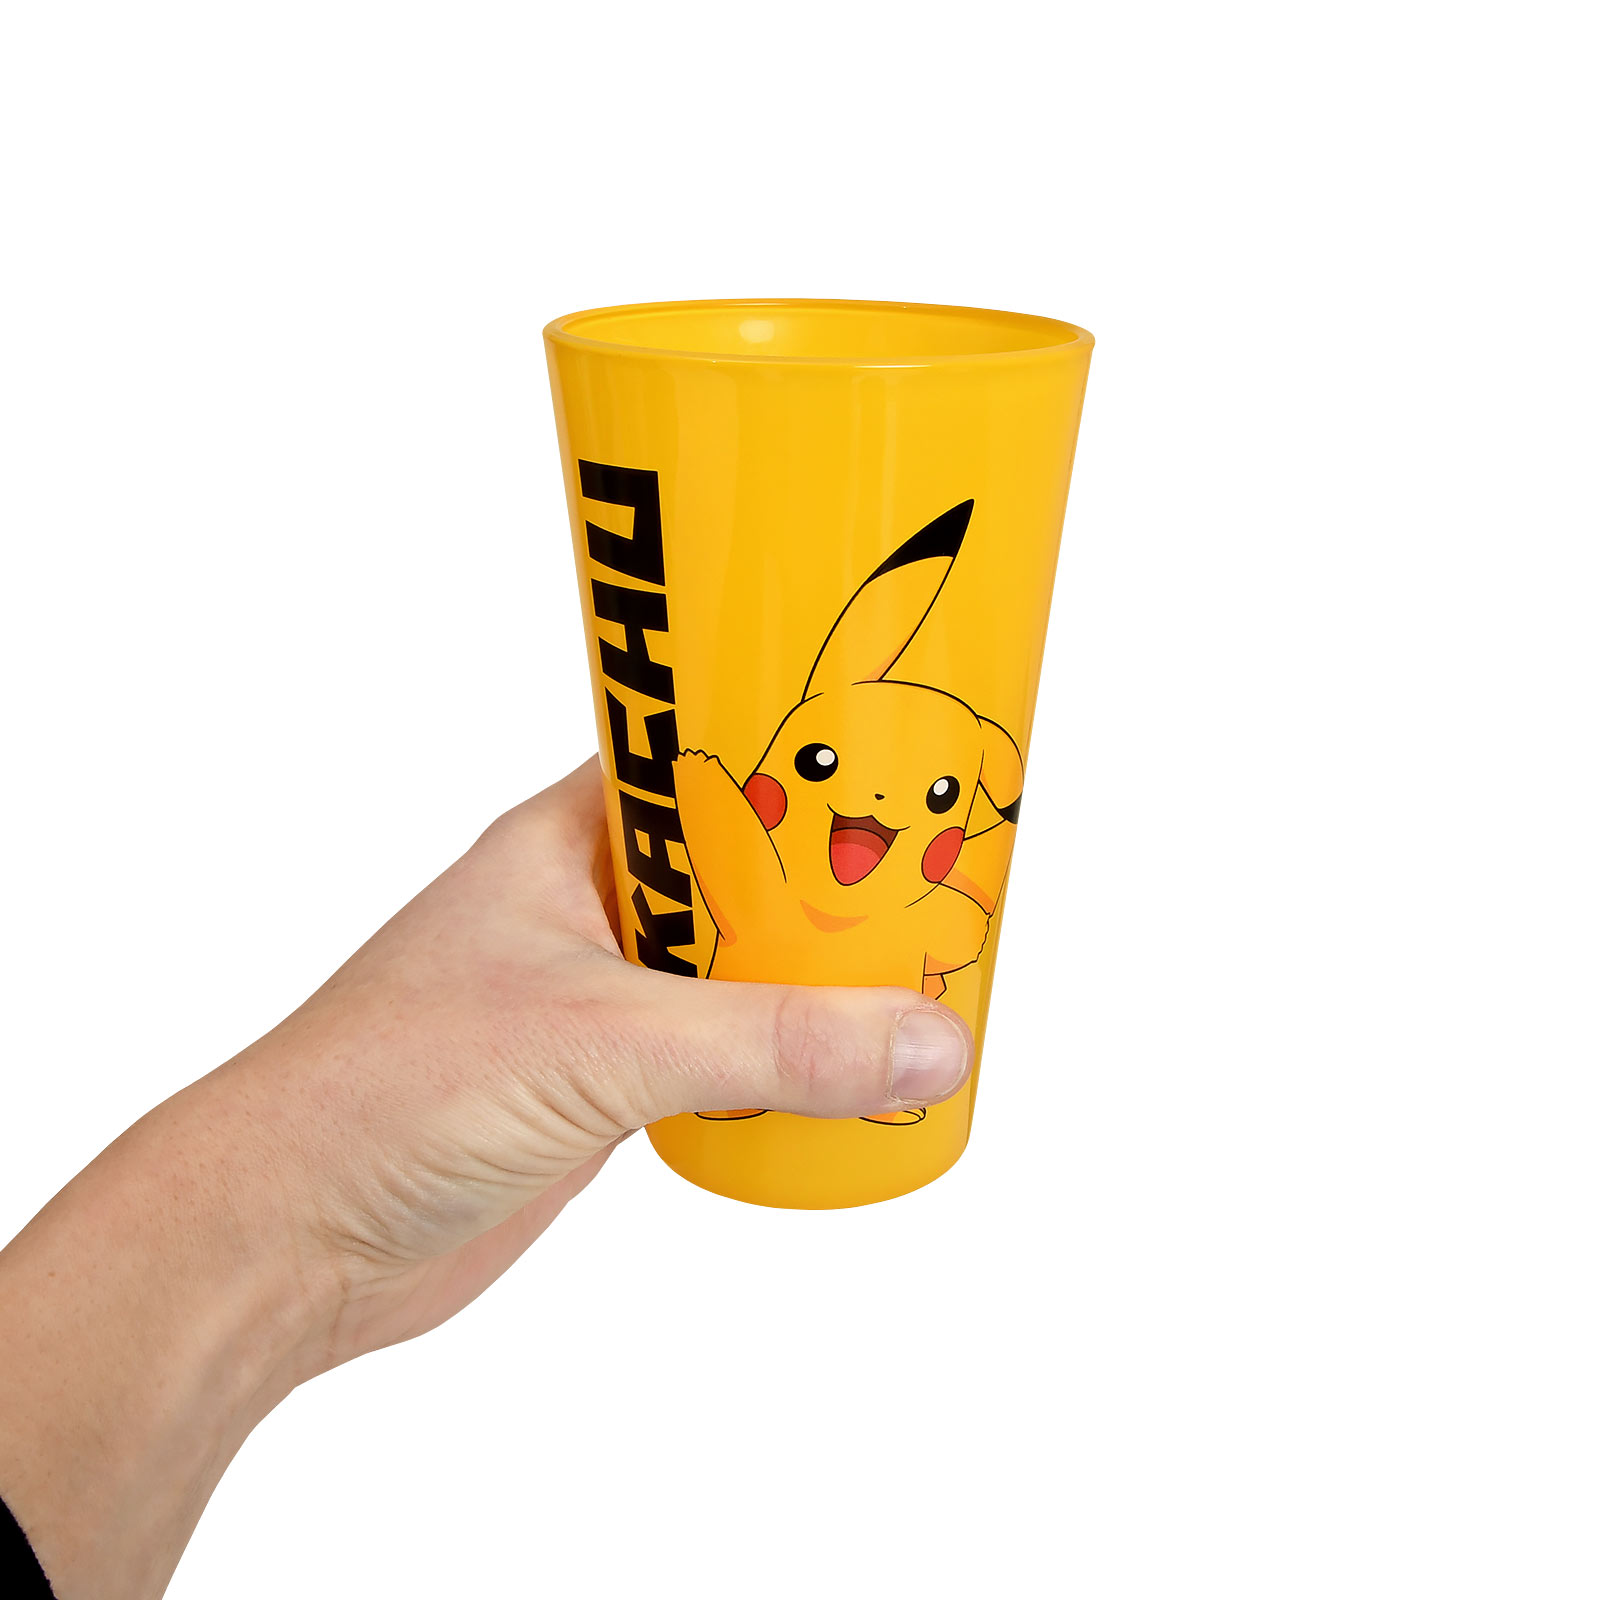 Pokemon - Coffret Cadeau Pikachu